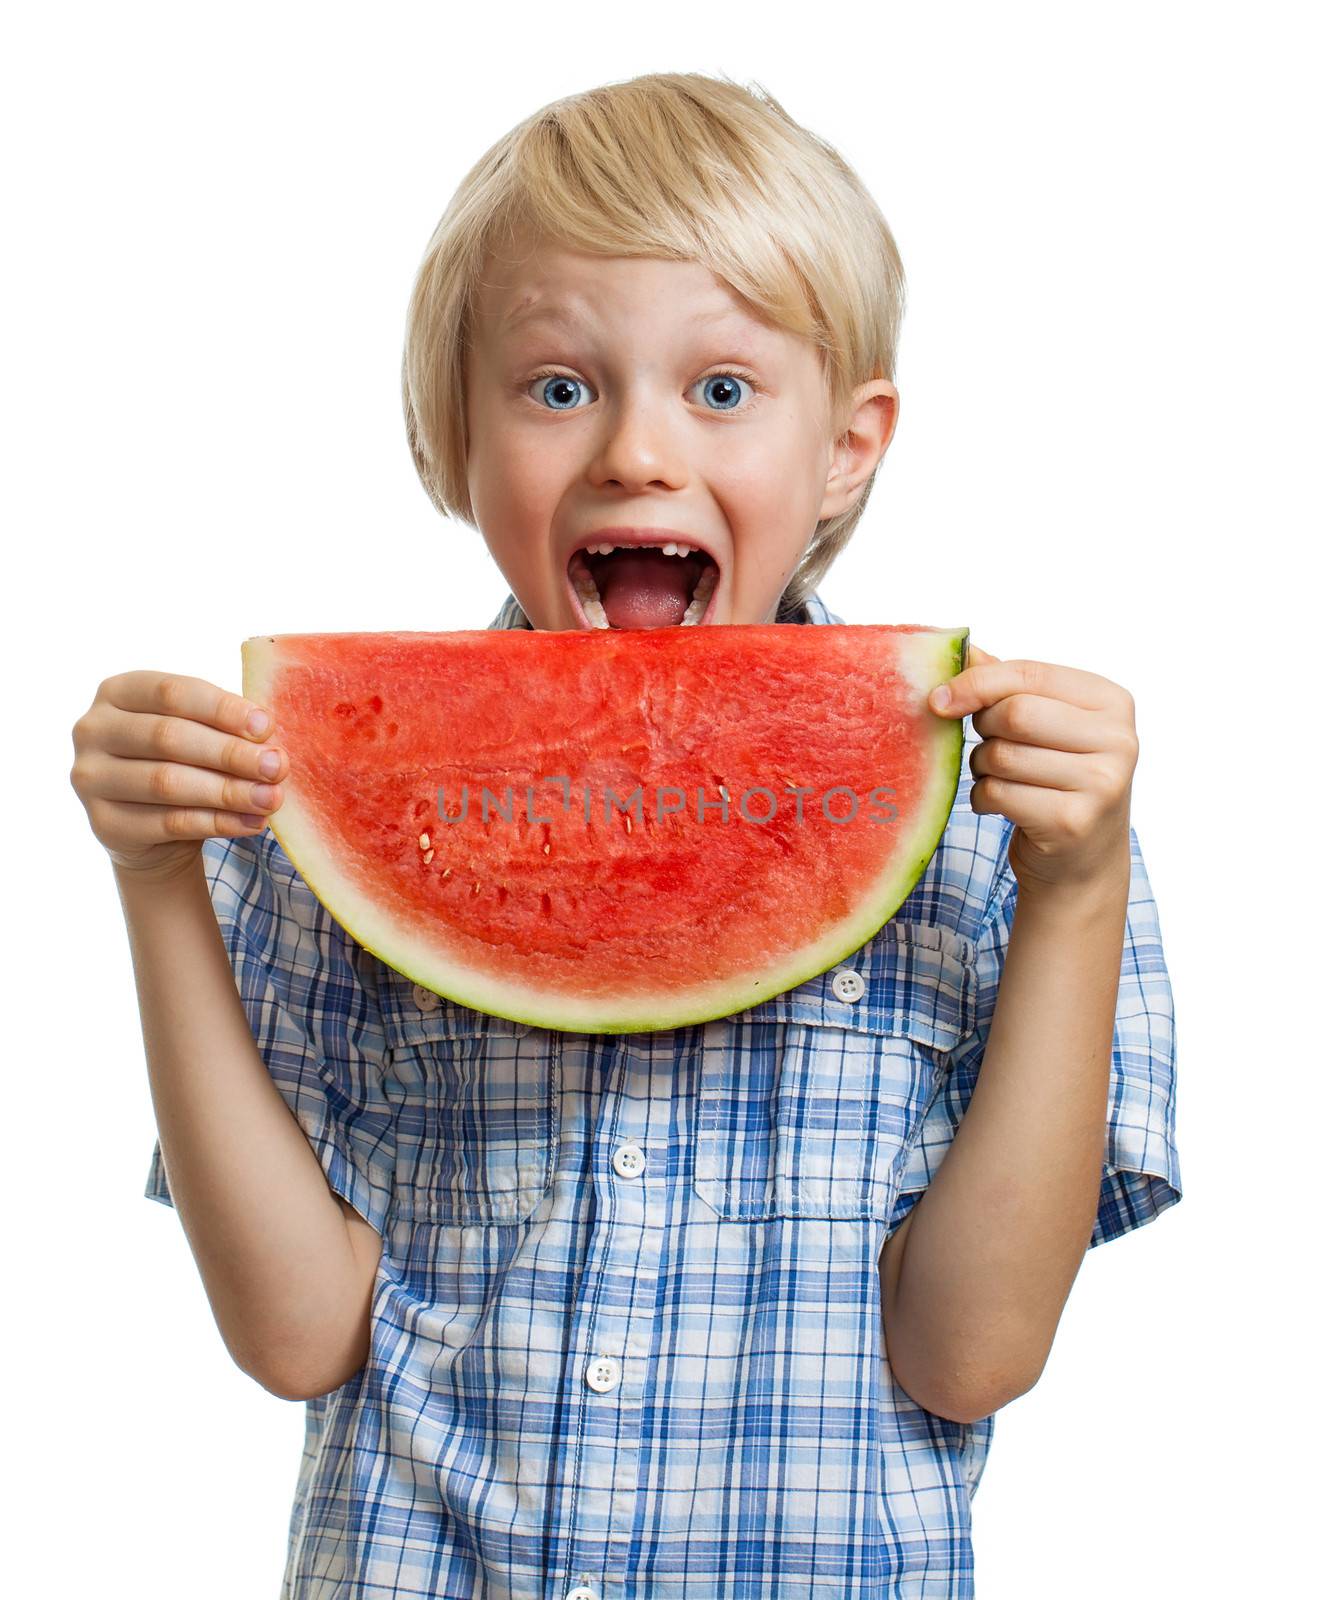 Boy taking bite of water melon by Jaykayl